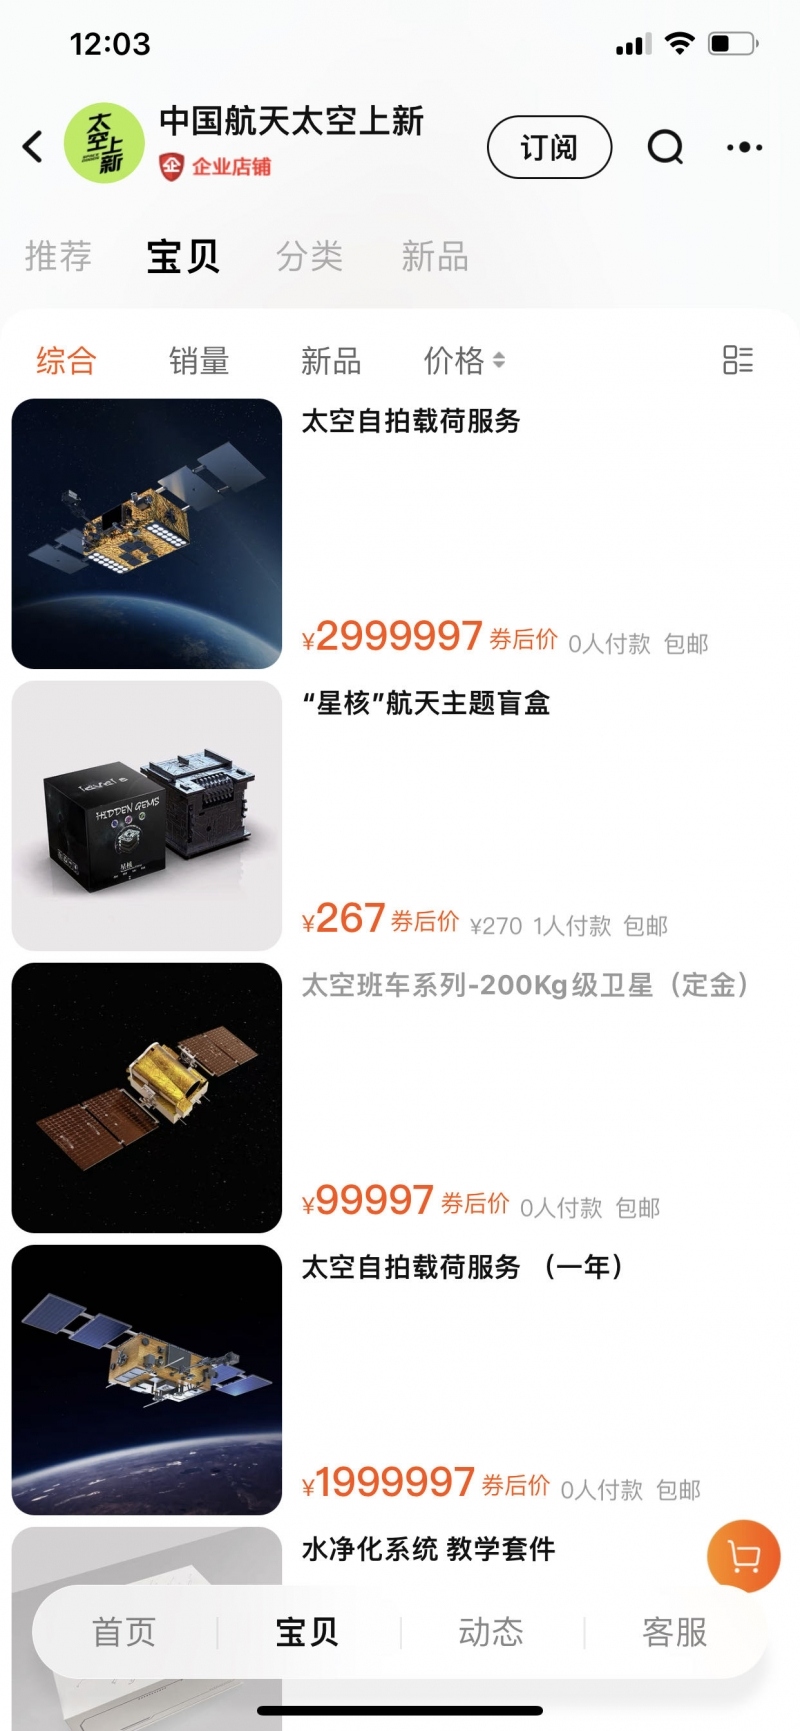 Trung Quốc bán vệ tinh trên nền tảng thương mại điện tử Taobao